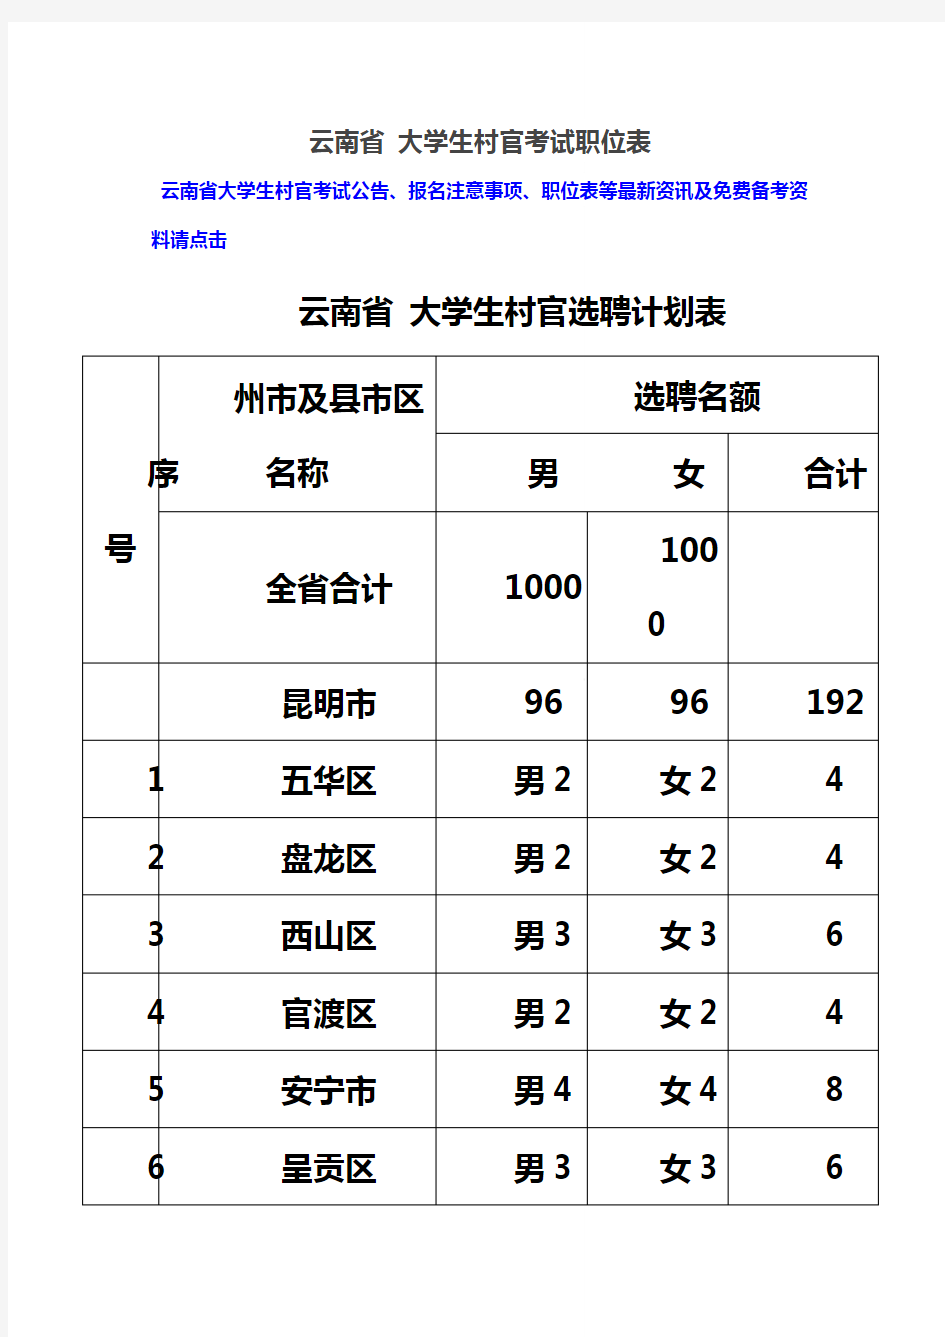 云南省大学生村官考试职位表